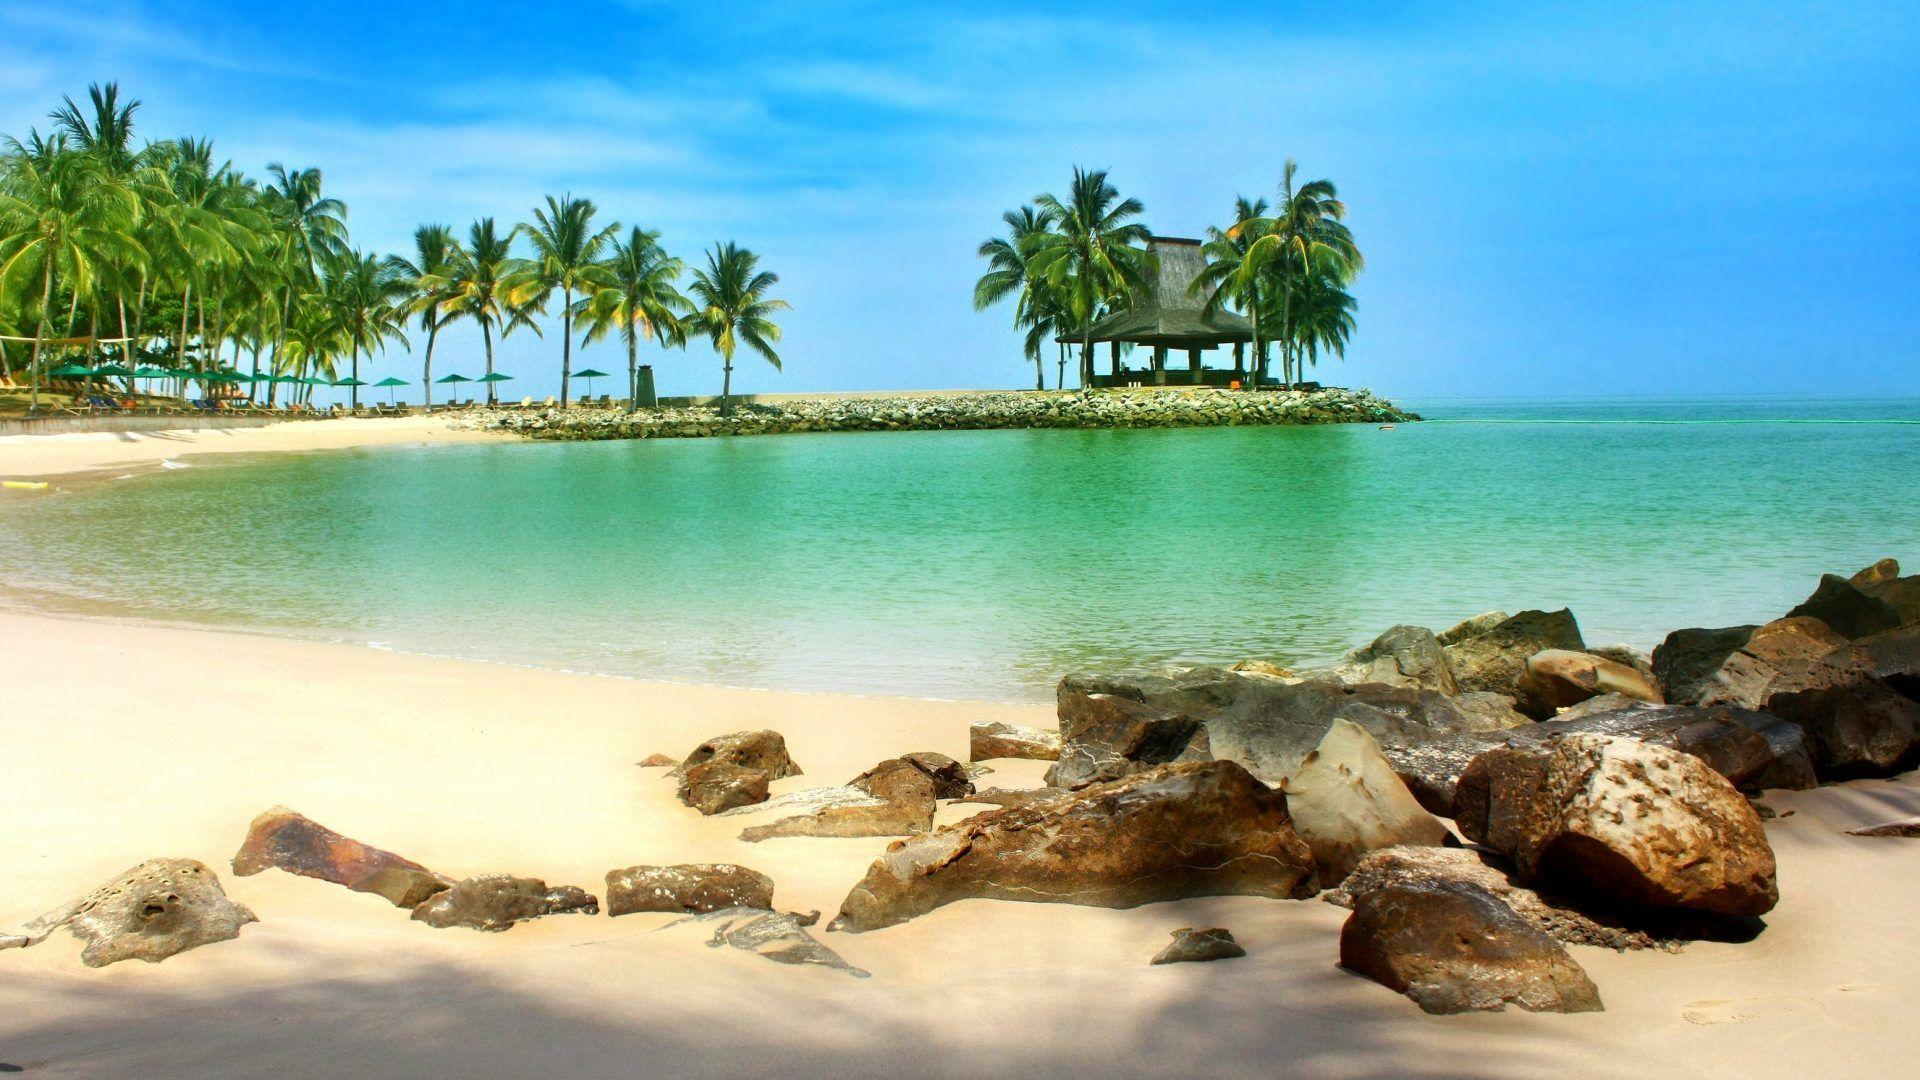 Borneo Tag wallpaper: White Borneo Sea Rocks Sand Tropical Summer